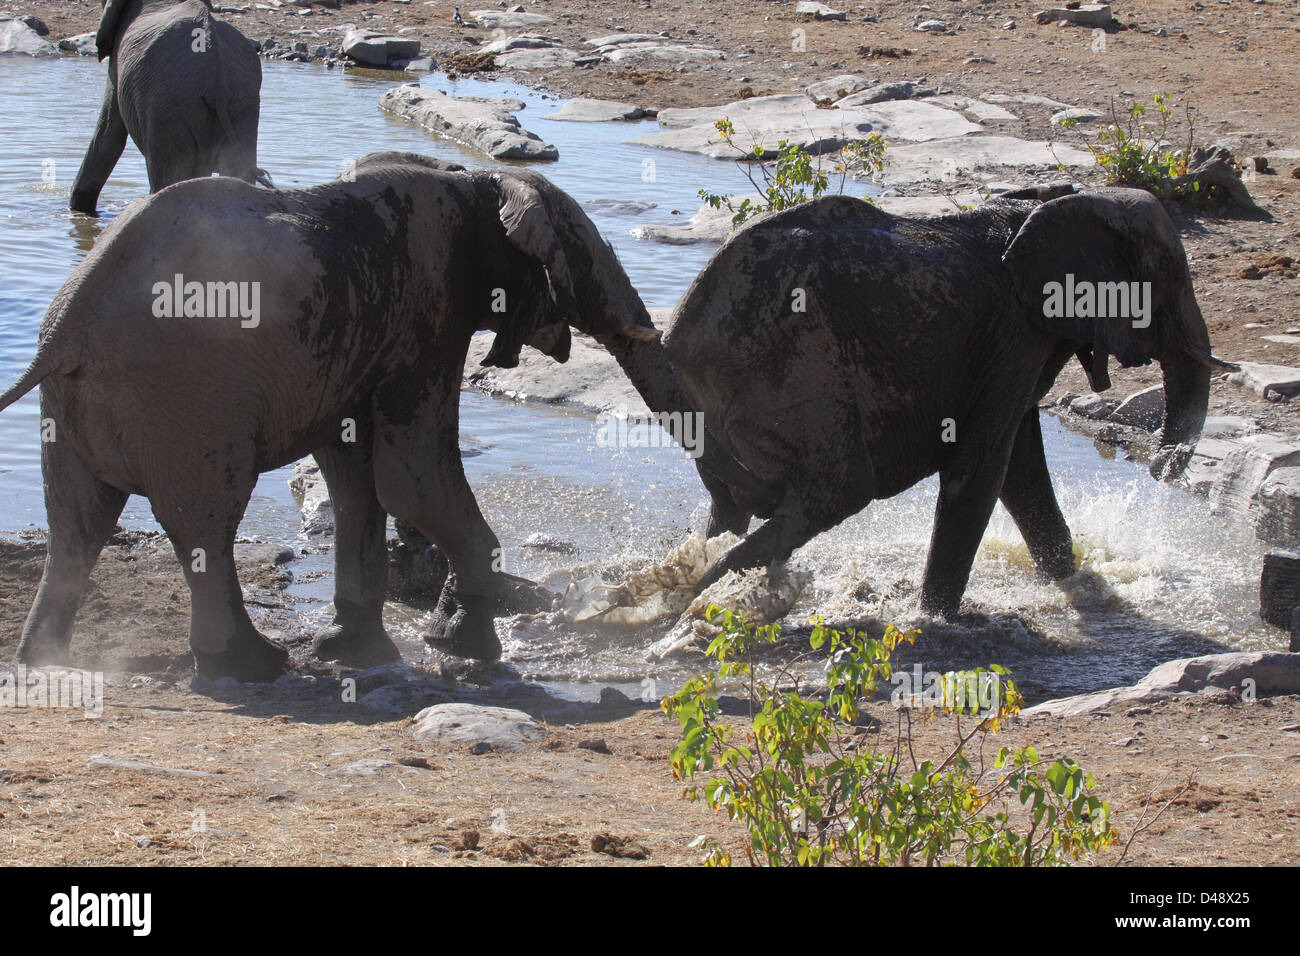 Elephant herd at waterhole, Etosha National Park, Namibia Stock Photo